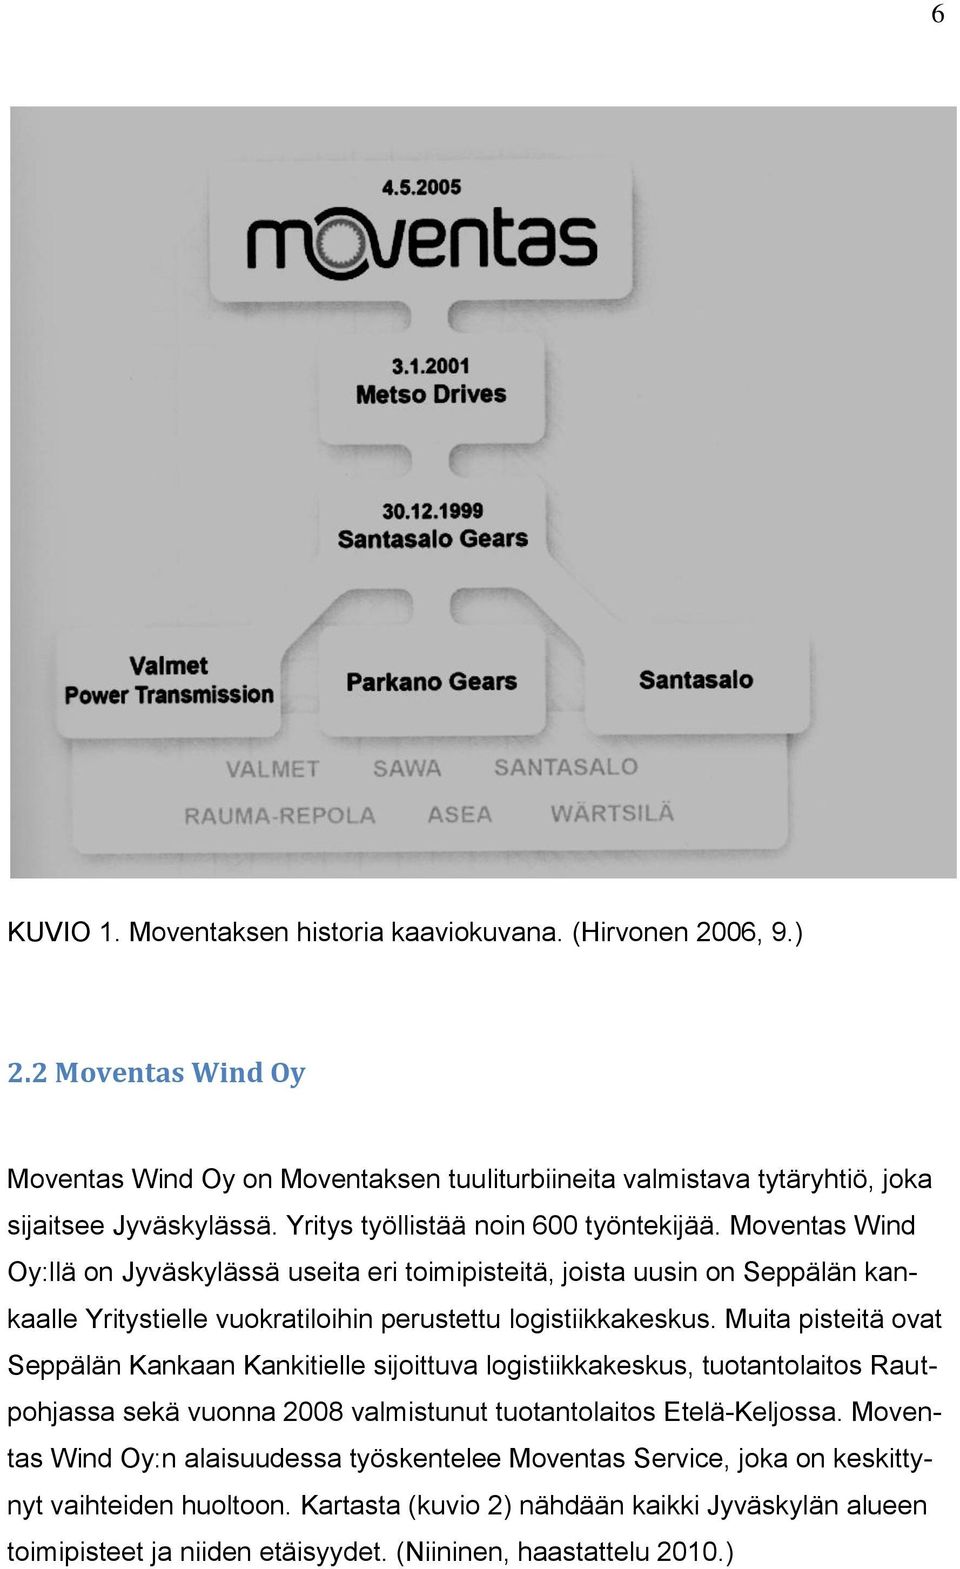 Moventas Wind Oy:llä on Jyväskylässä useita eri toimipisteitä, joista uusin on Seppälän kankaalle Yritystielle vuokratiloihin perustettu logistiikkakeskus.